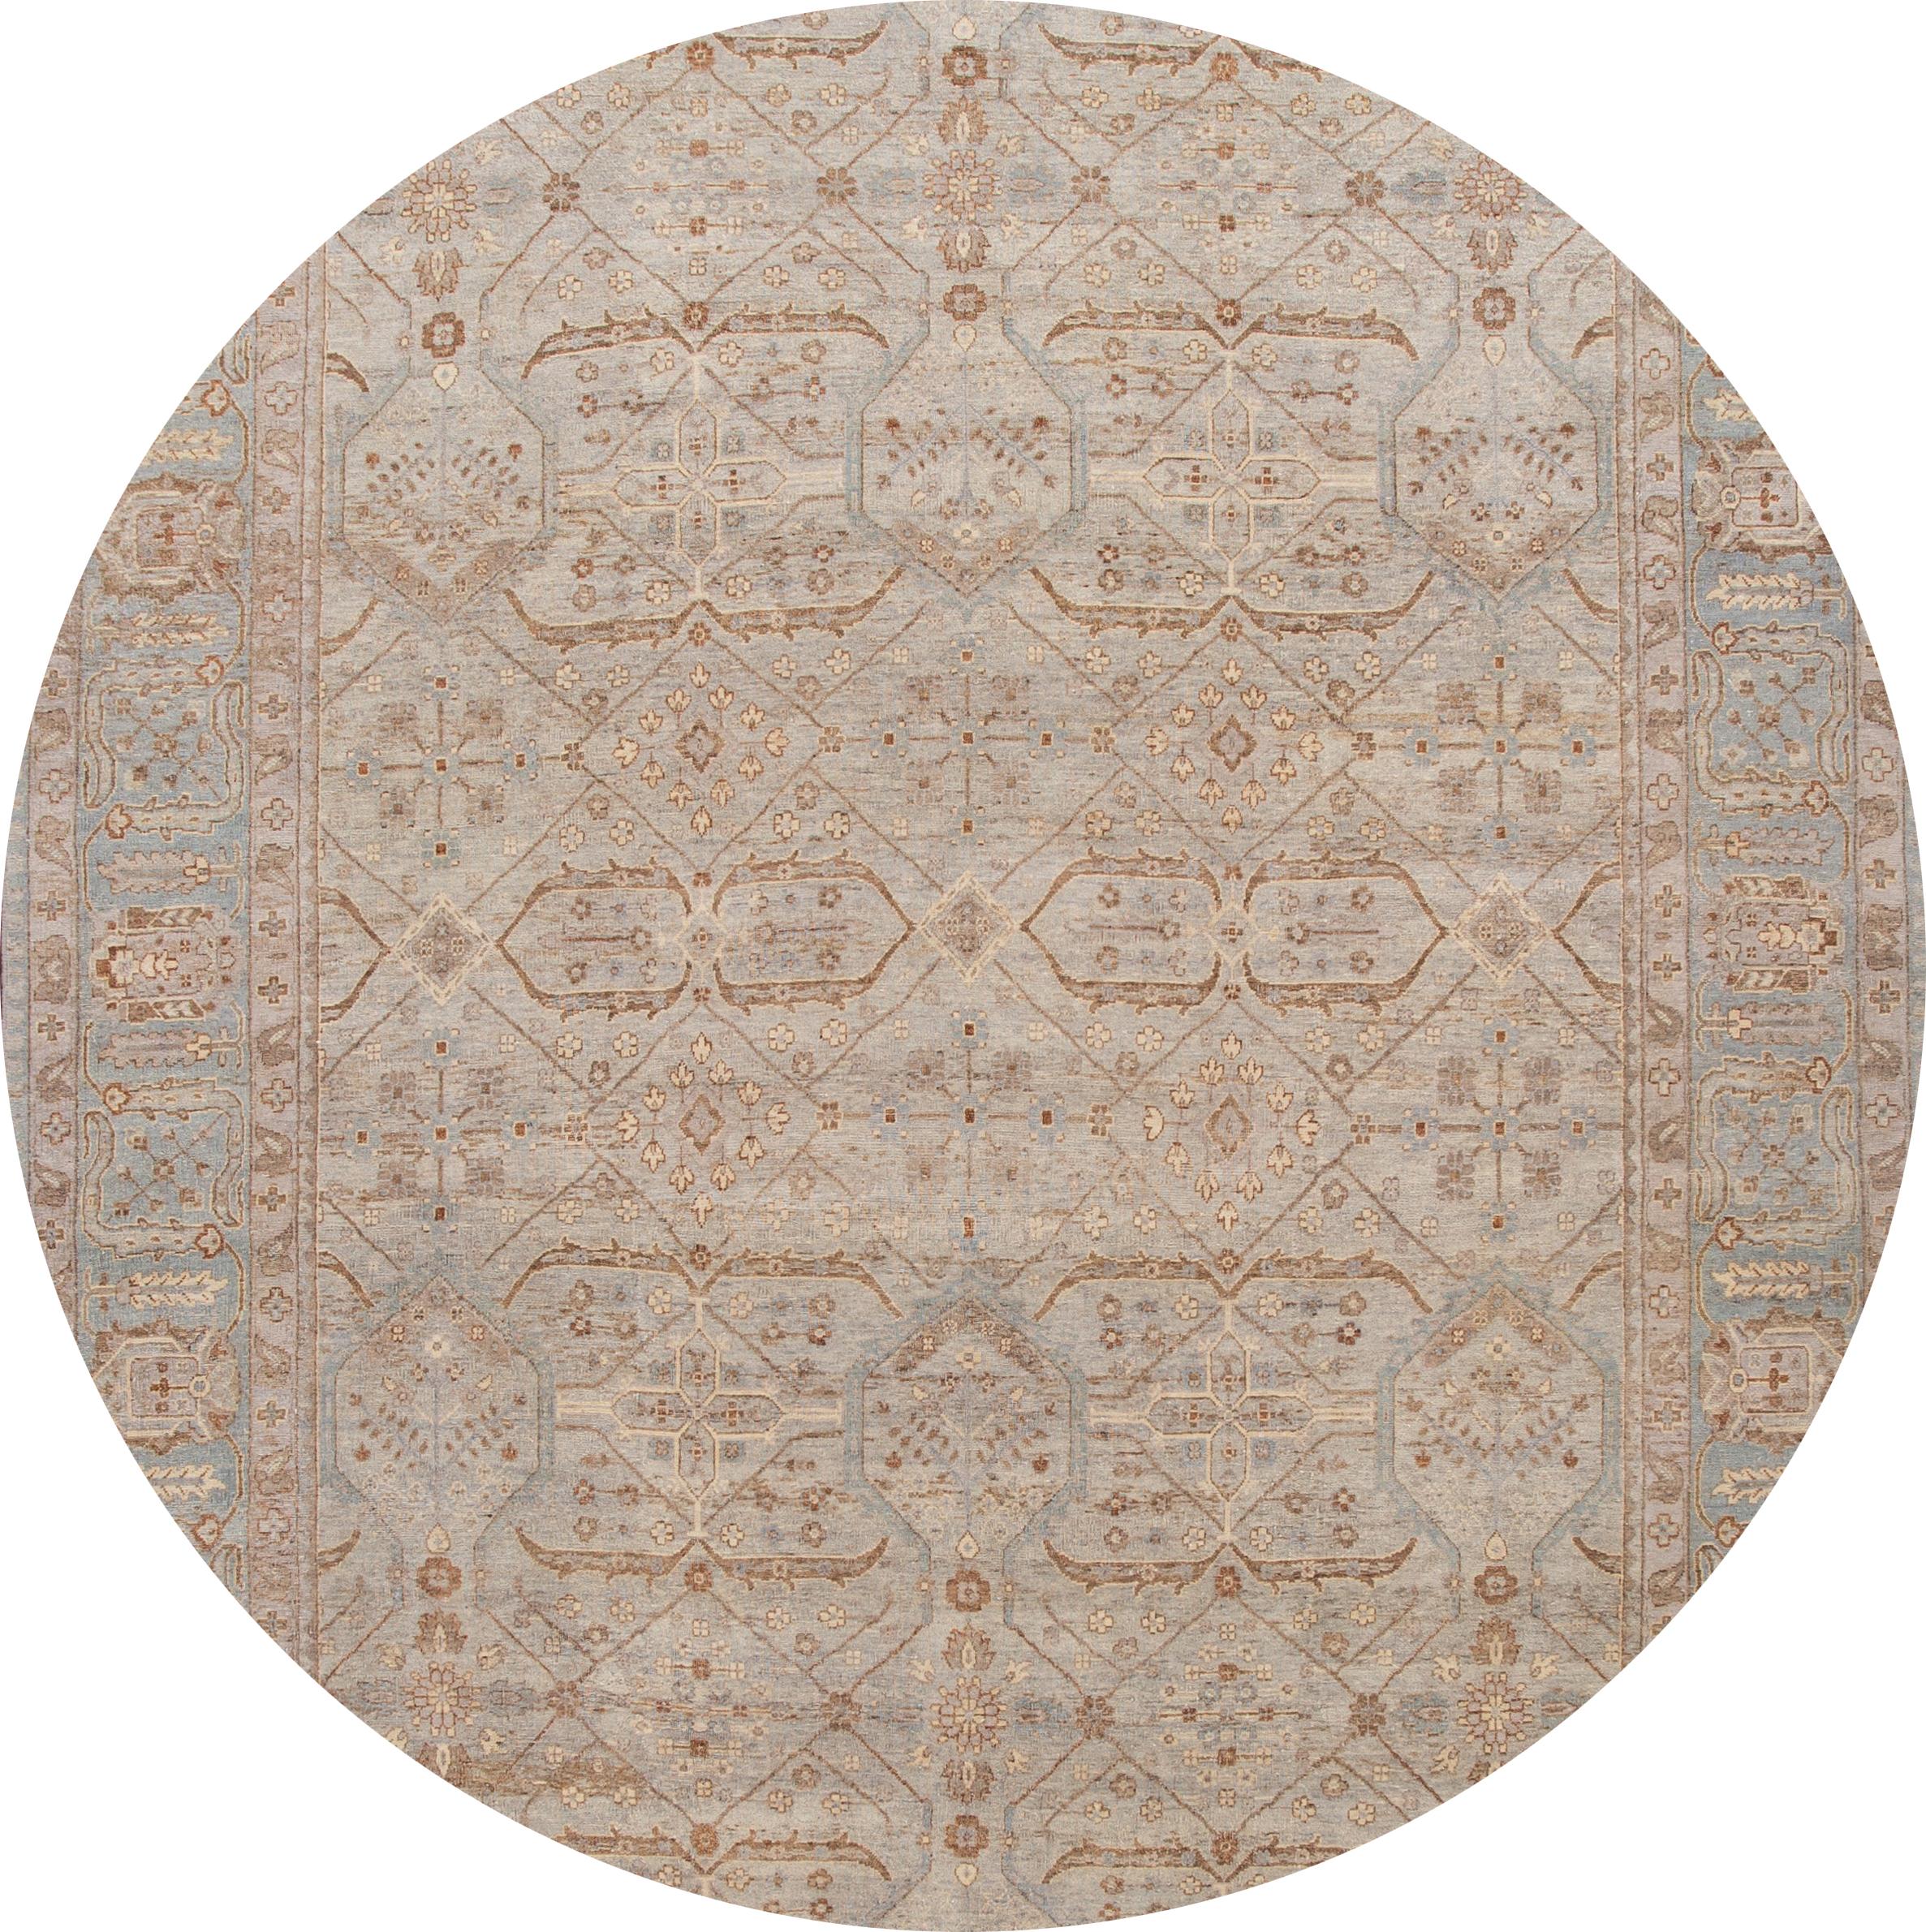 Schöner, moderner, handgeknüpfter indischer Wollteppich mit grauem Feld, beigen, braunen und blauen Akzenten und einem geometrischen Allover-Muster.

Dieser Teppich misst: 9'8